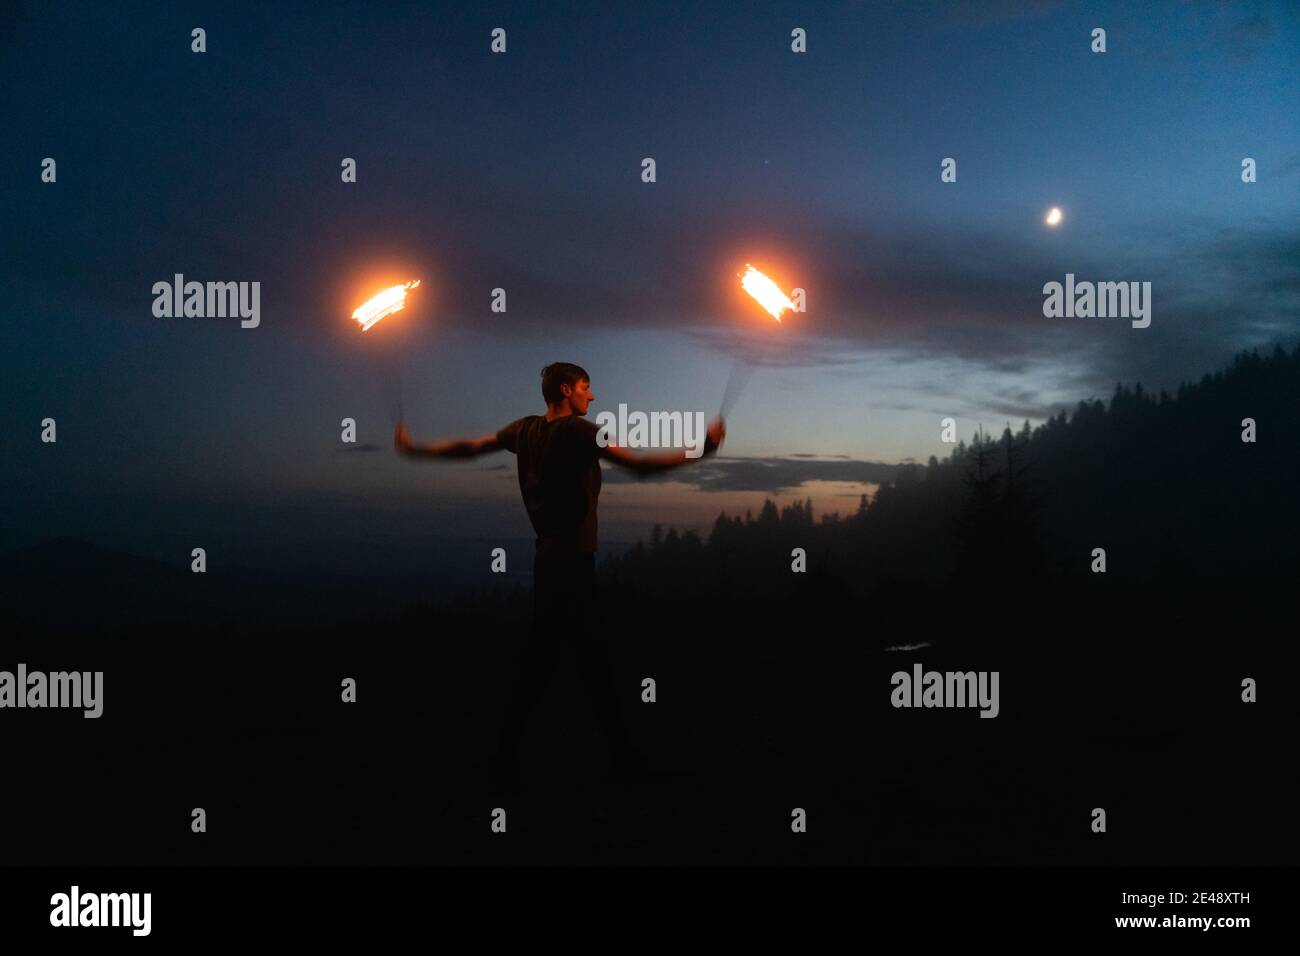 Aggraziato performer di fuoco maschile che fa danza del fuoco con due metalli ventilatori illuminati con fiamme sul prato notturno delle montagne Foto Stock